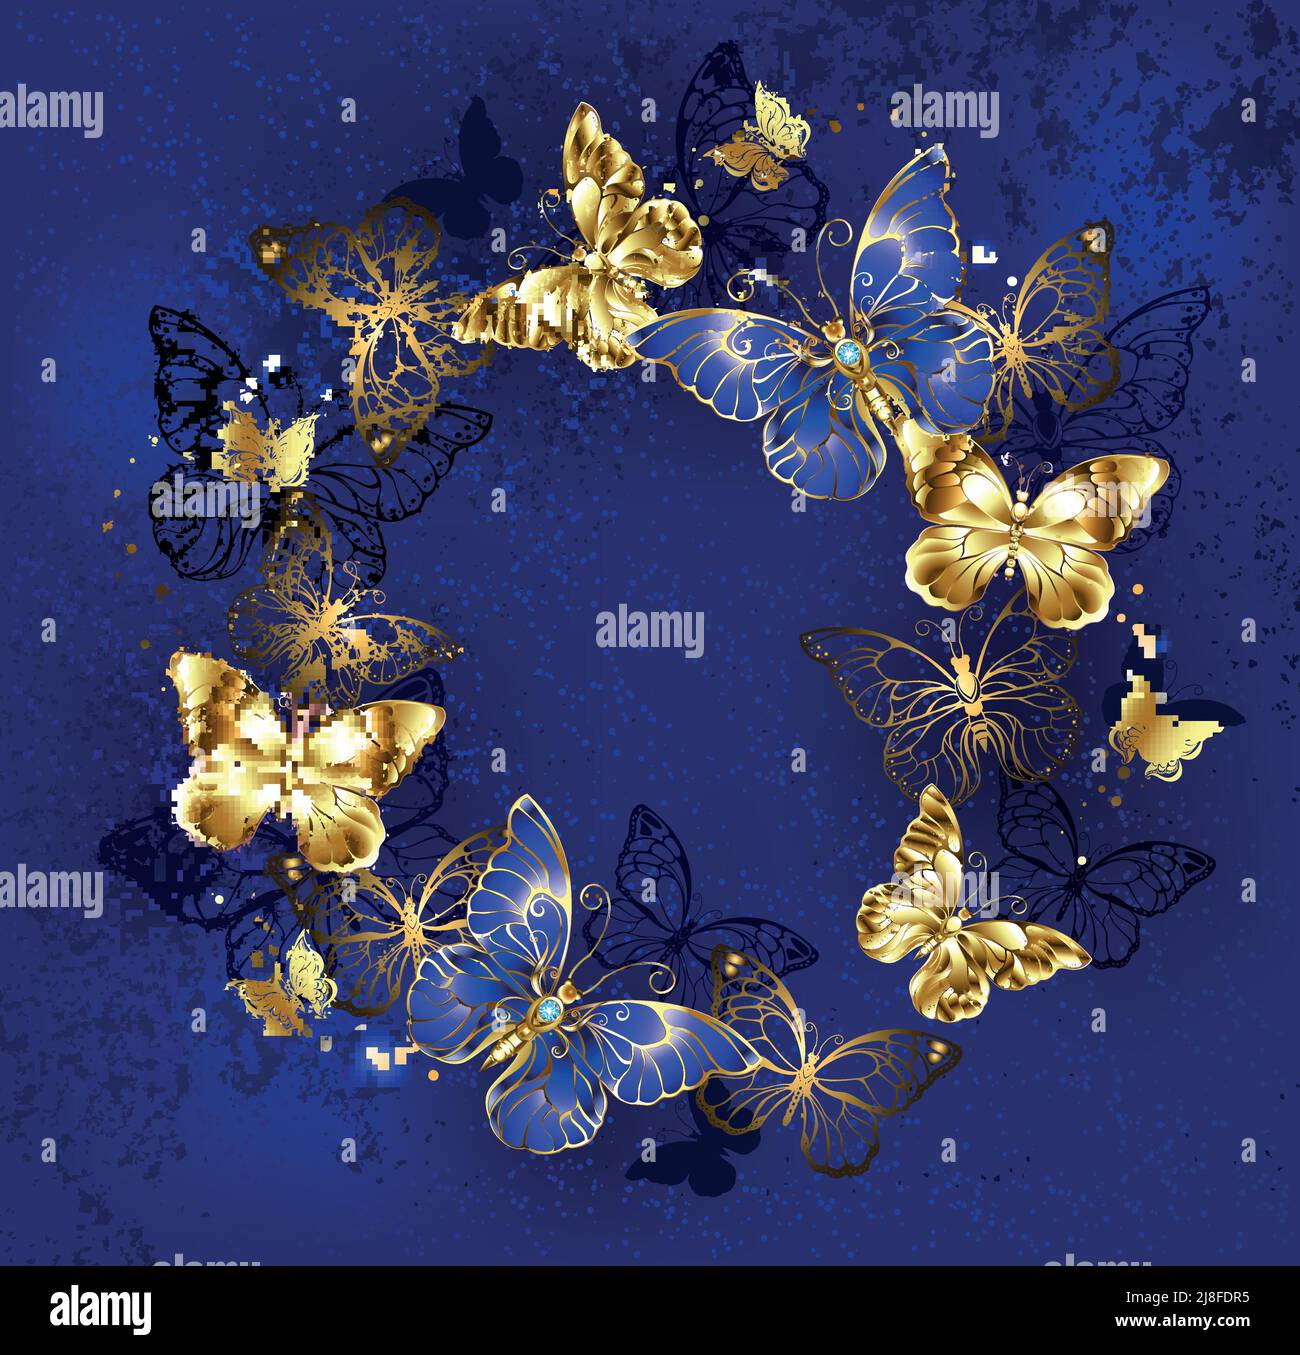 Zafiro, mariposas de joyería y mariposas de oro volando en círculo, sobre fondo azul, con textura. Ilustración del Vector